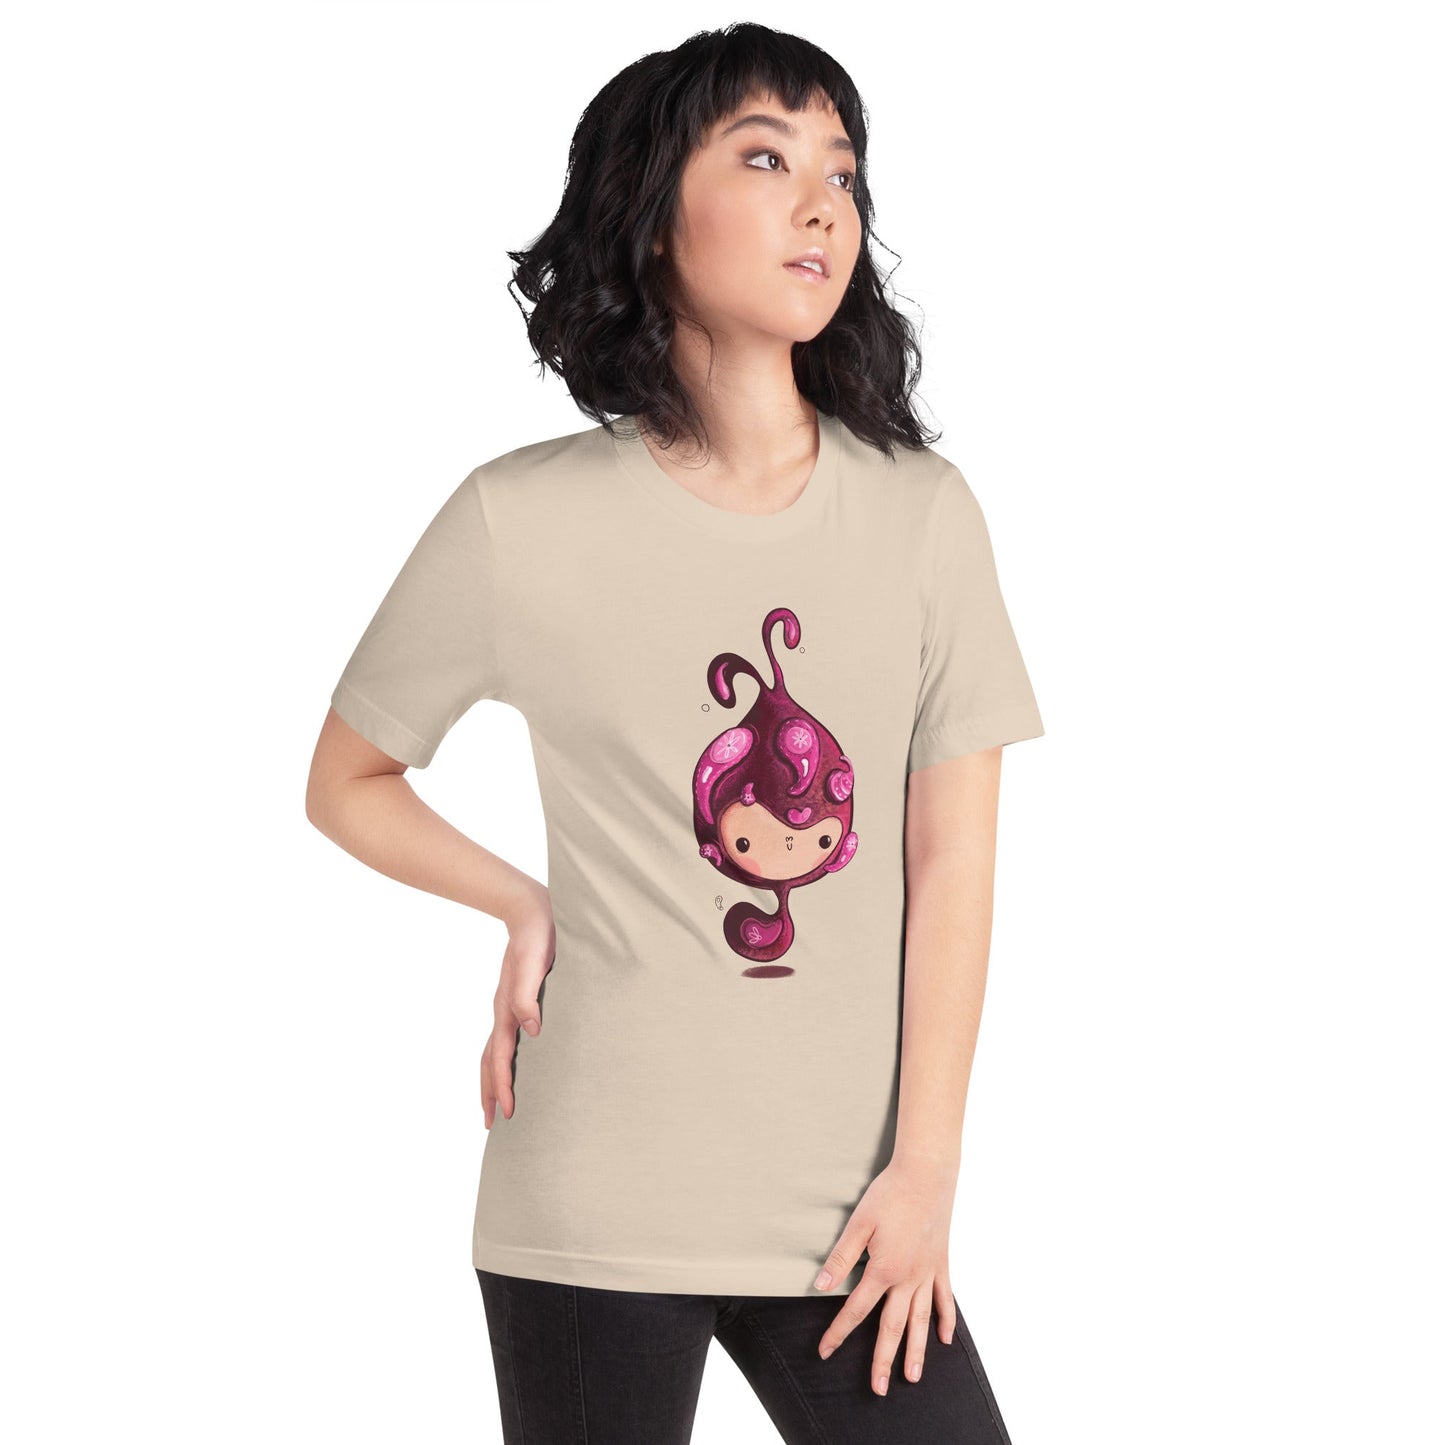 THE LITTLE SNAIL Women's T-Shirt - Bonotee